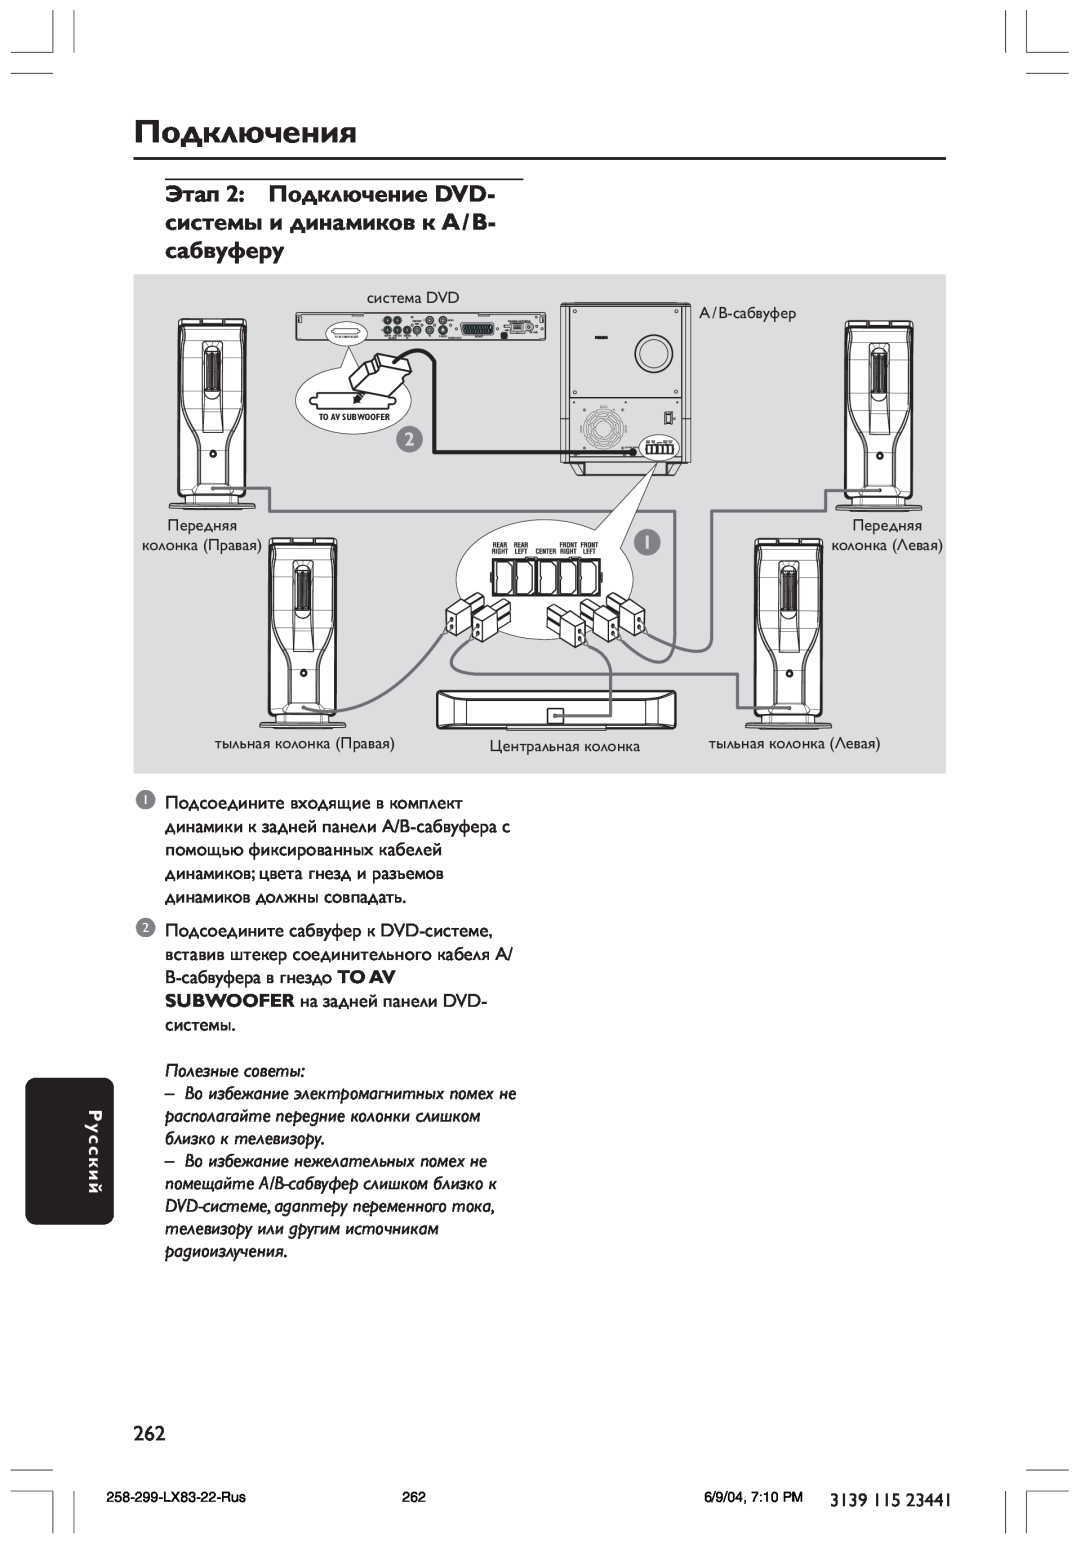 Philips LX8300SA user manual сабвуферу, Подключения, Русский, Полезные советы 